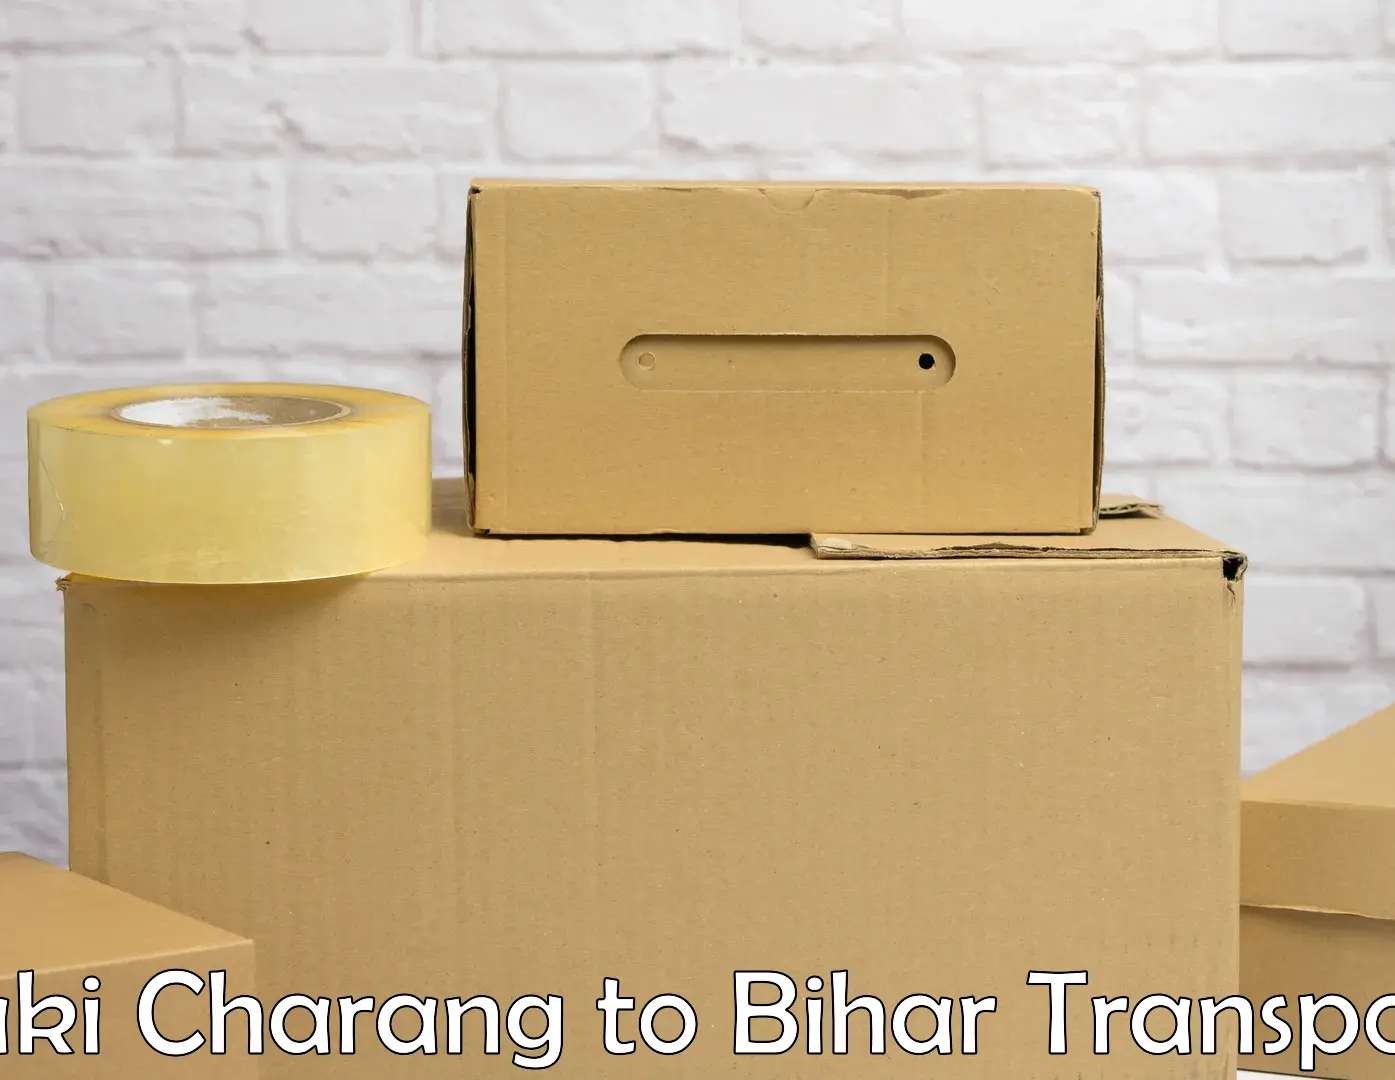 Online transport booking Saki Charang to Sahebpur Kamal